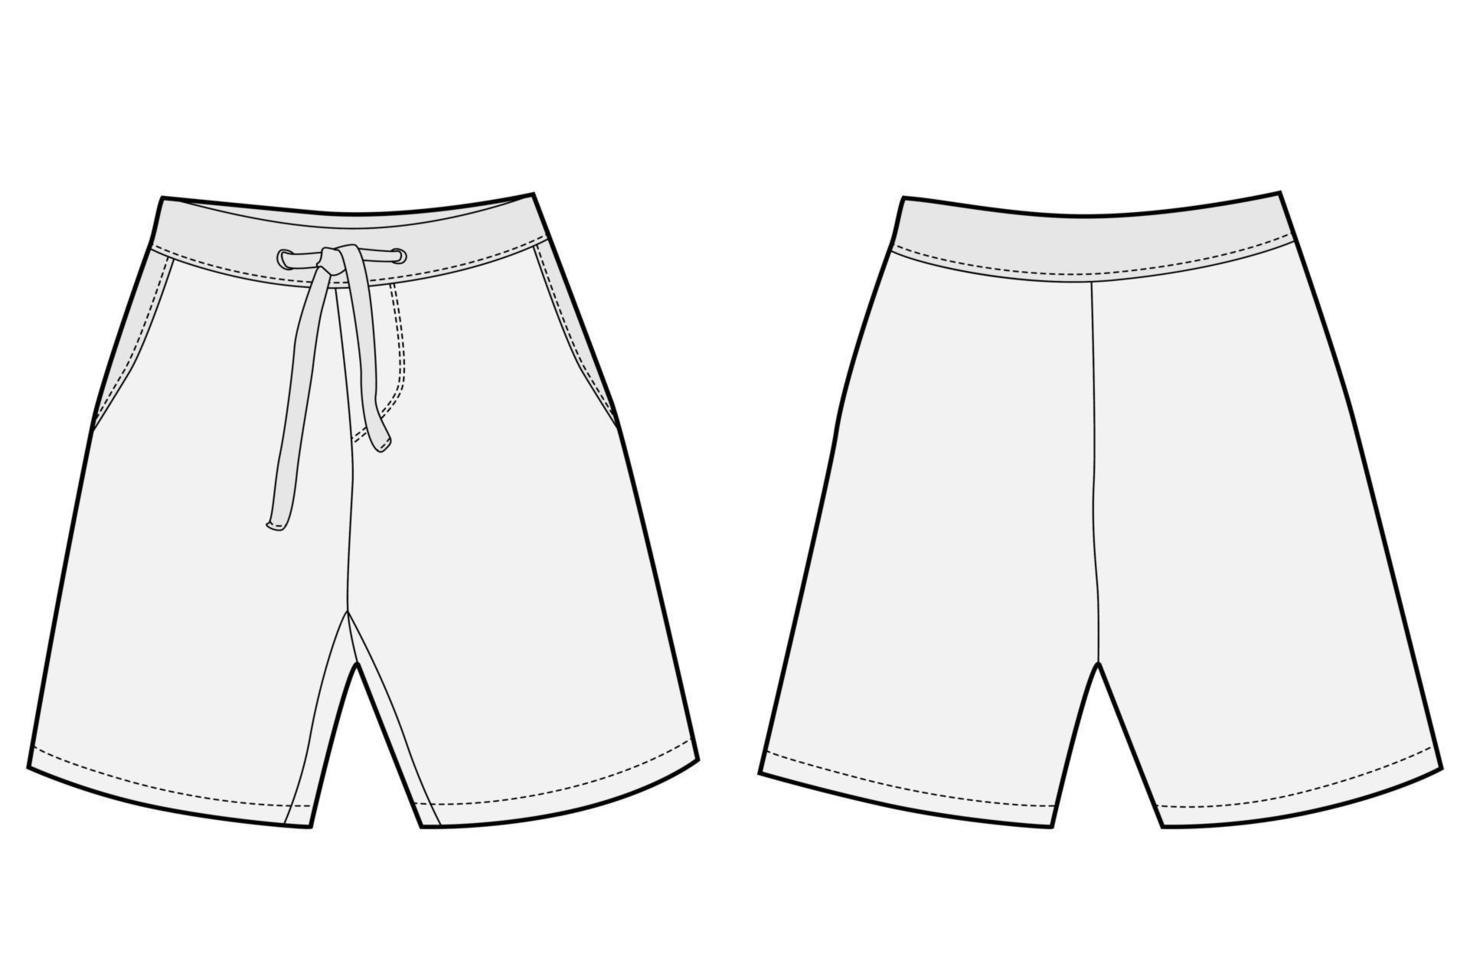 technische schets sport shorts broek ontwerp. jongenskleding sjabloon. informele stijl. CAD-model. vector